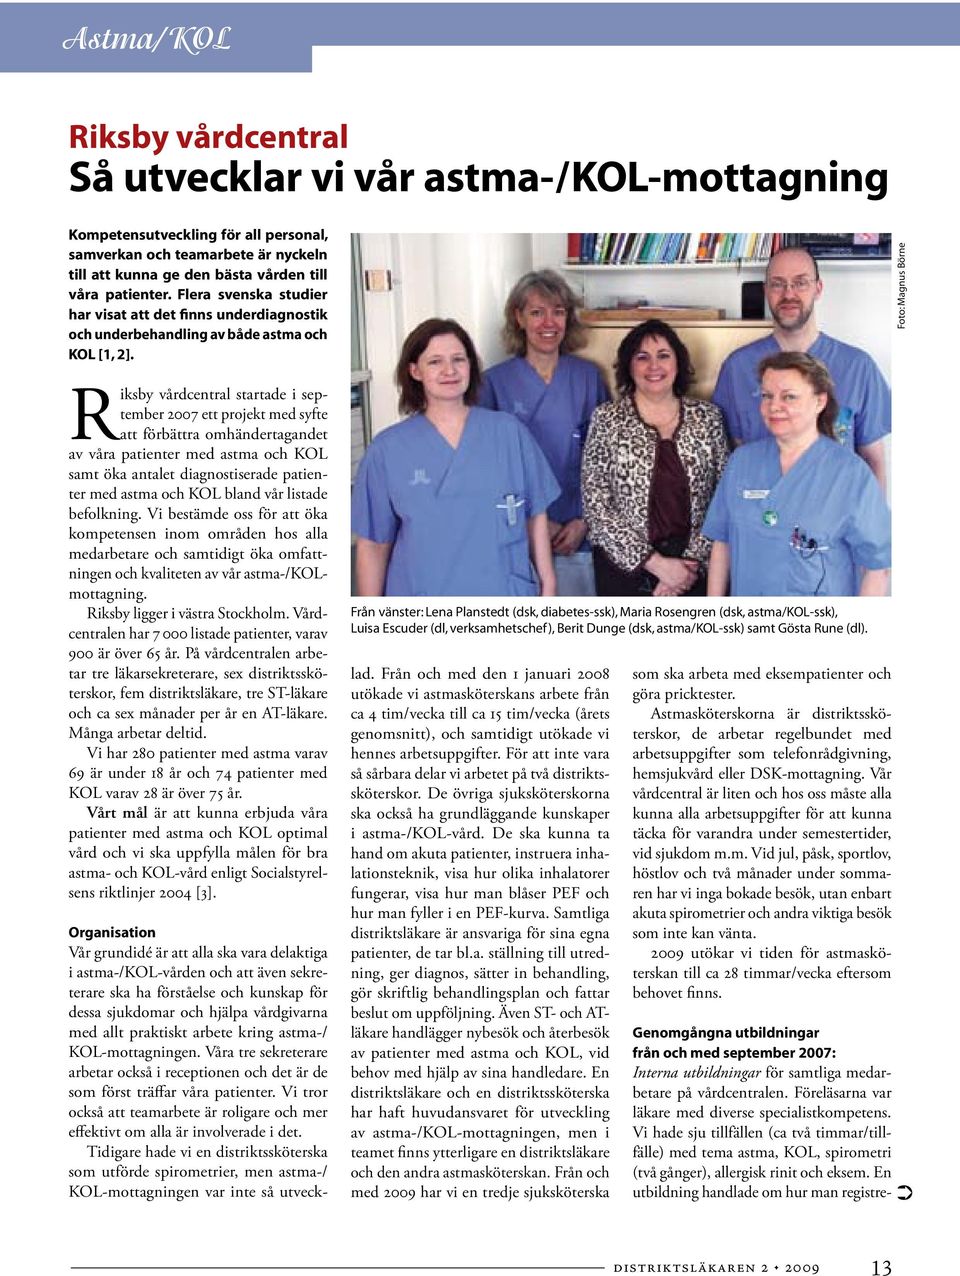 Riksby vårdcentral startade i september 2007 ett projekt med syfte att förbättra omhändertagandet av våra patienter med astma och KOL samt öka antalet diagnostiserade patienter med astma och KOL